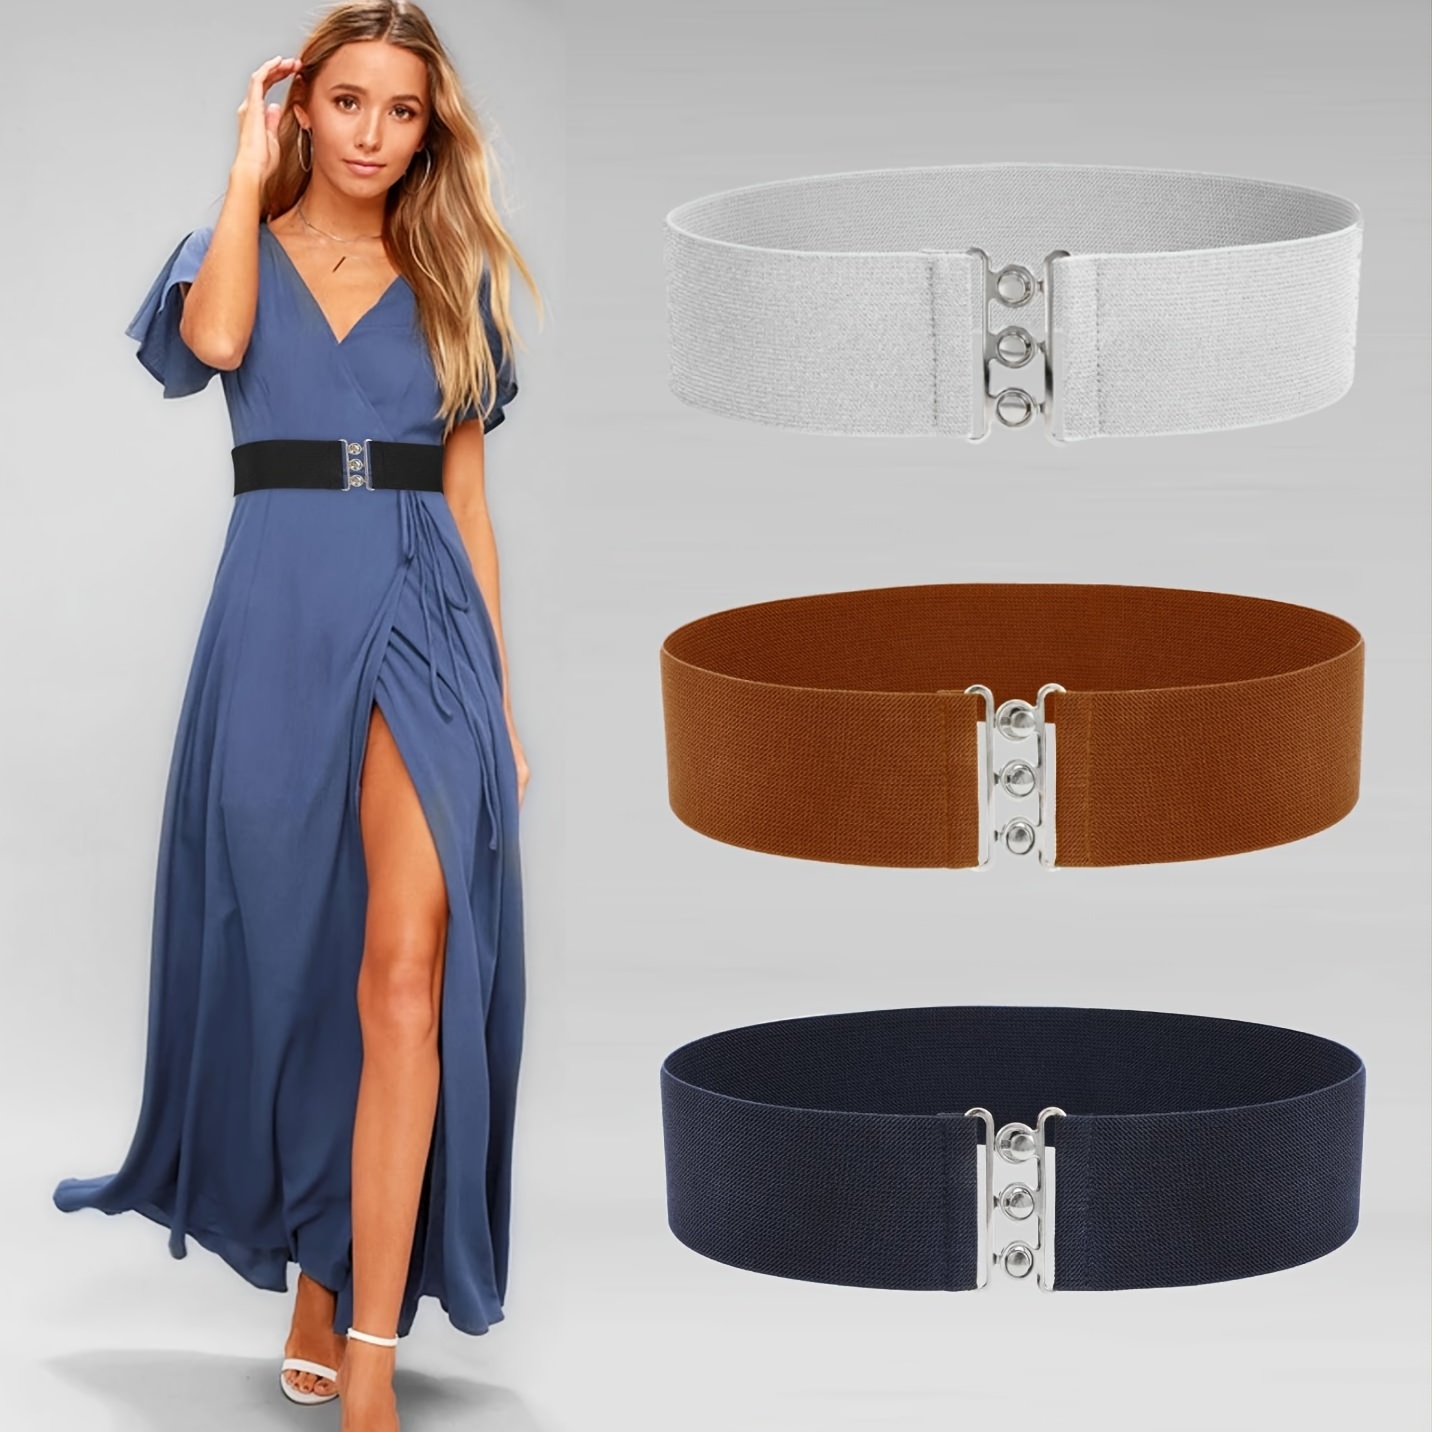 Buy Women's Belts for Dresses